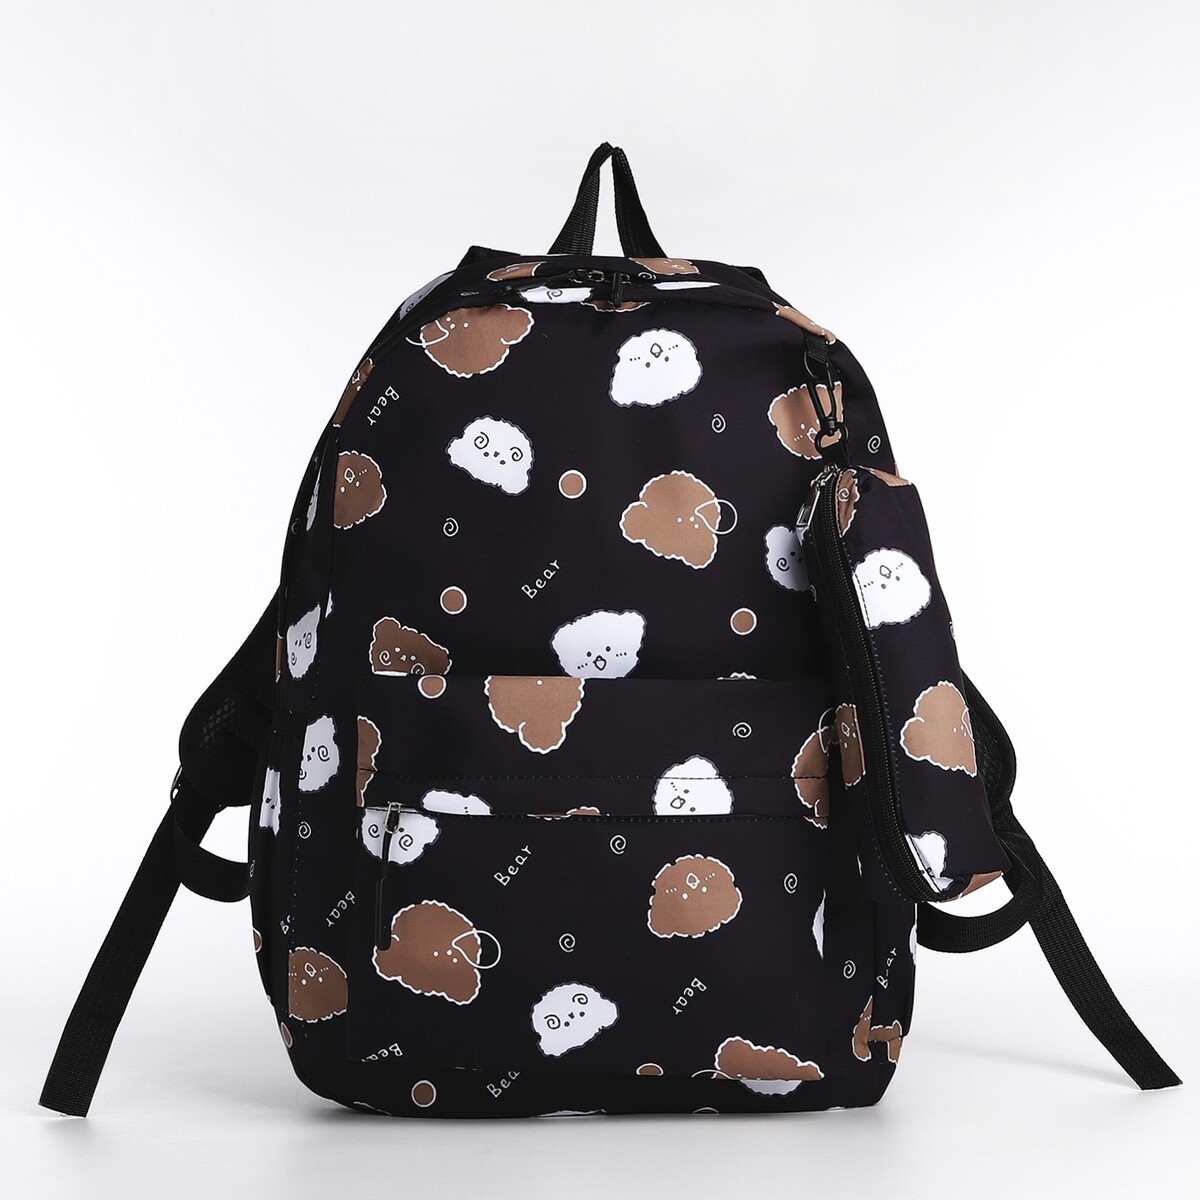 Рюкзак школьный из текстиля на молнии, 3 кармана, пенал, цвет черный